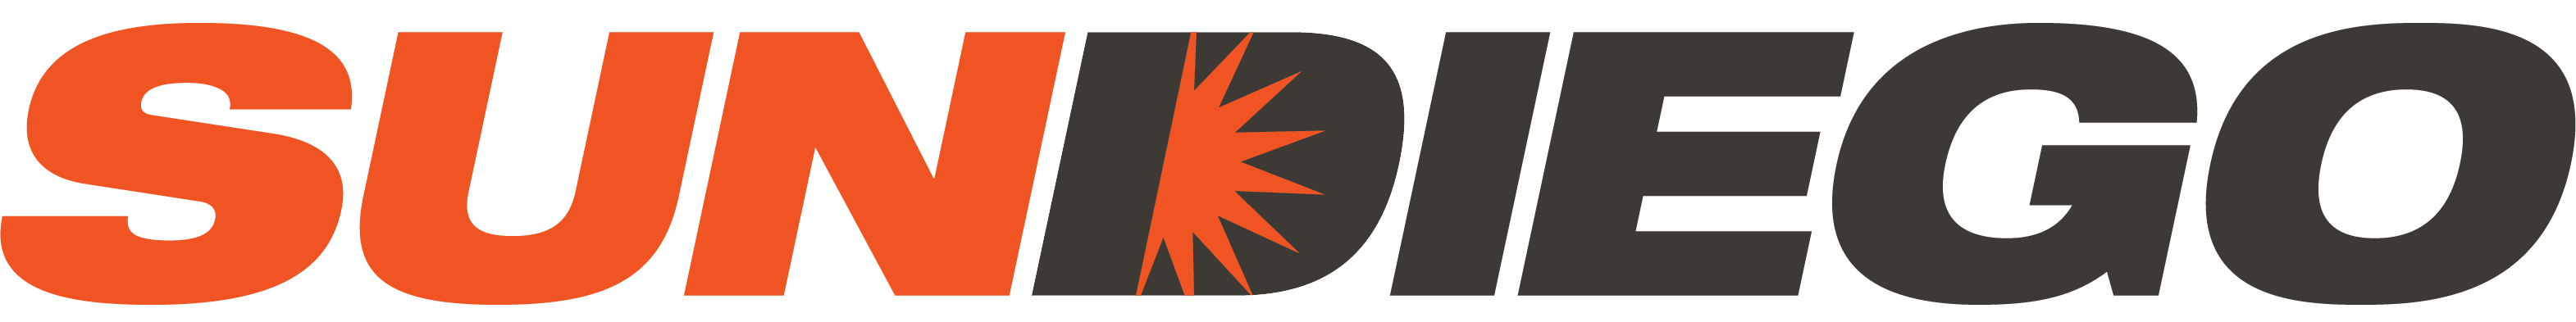 Sun Diego Charter logo